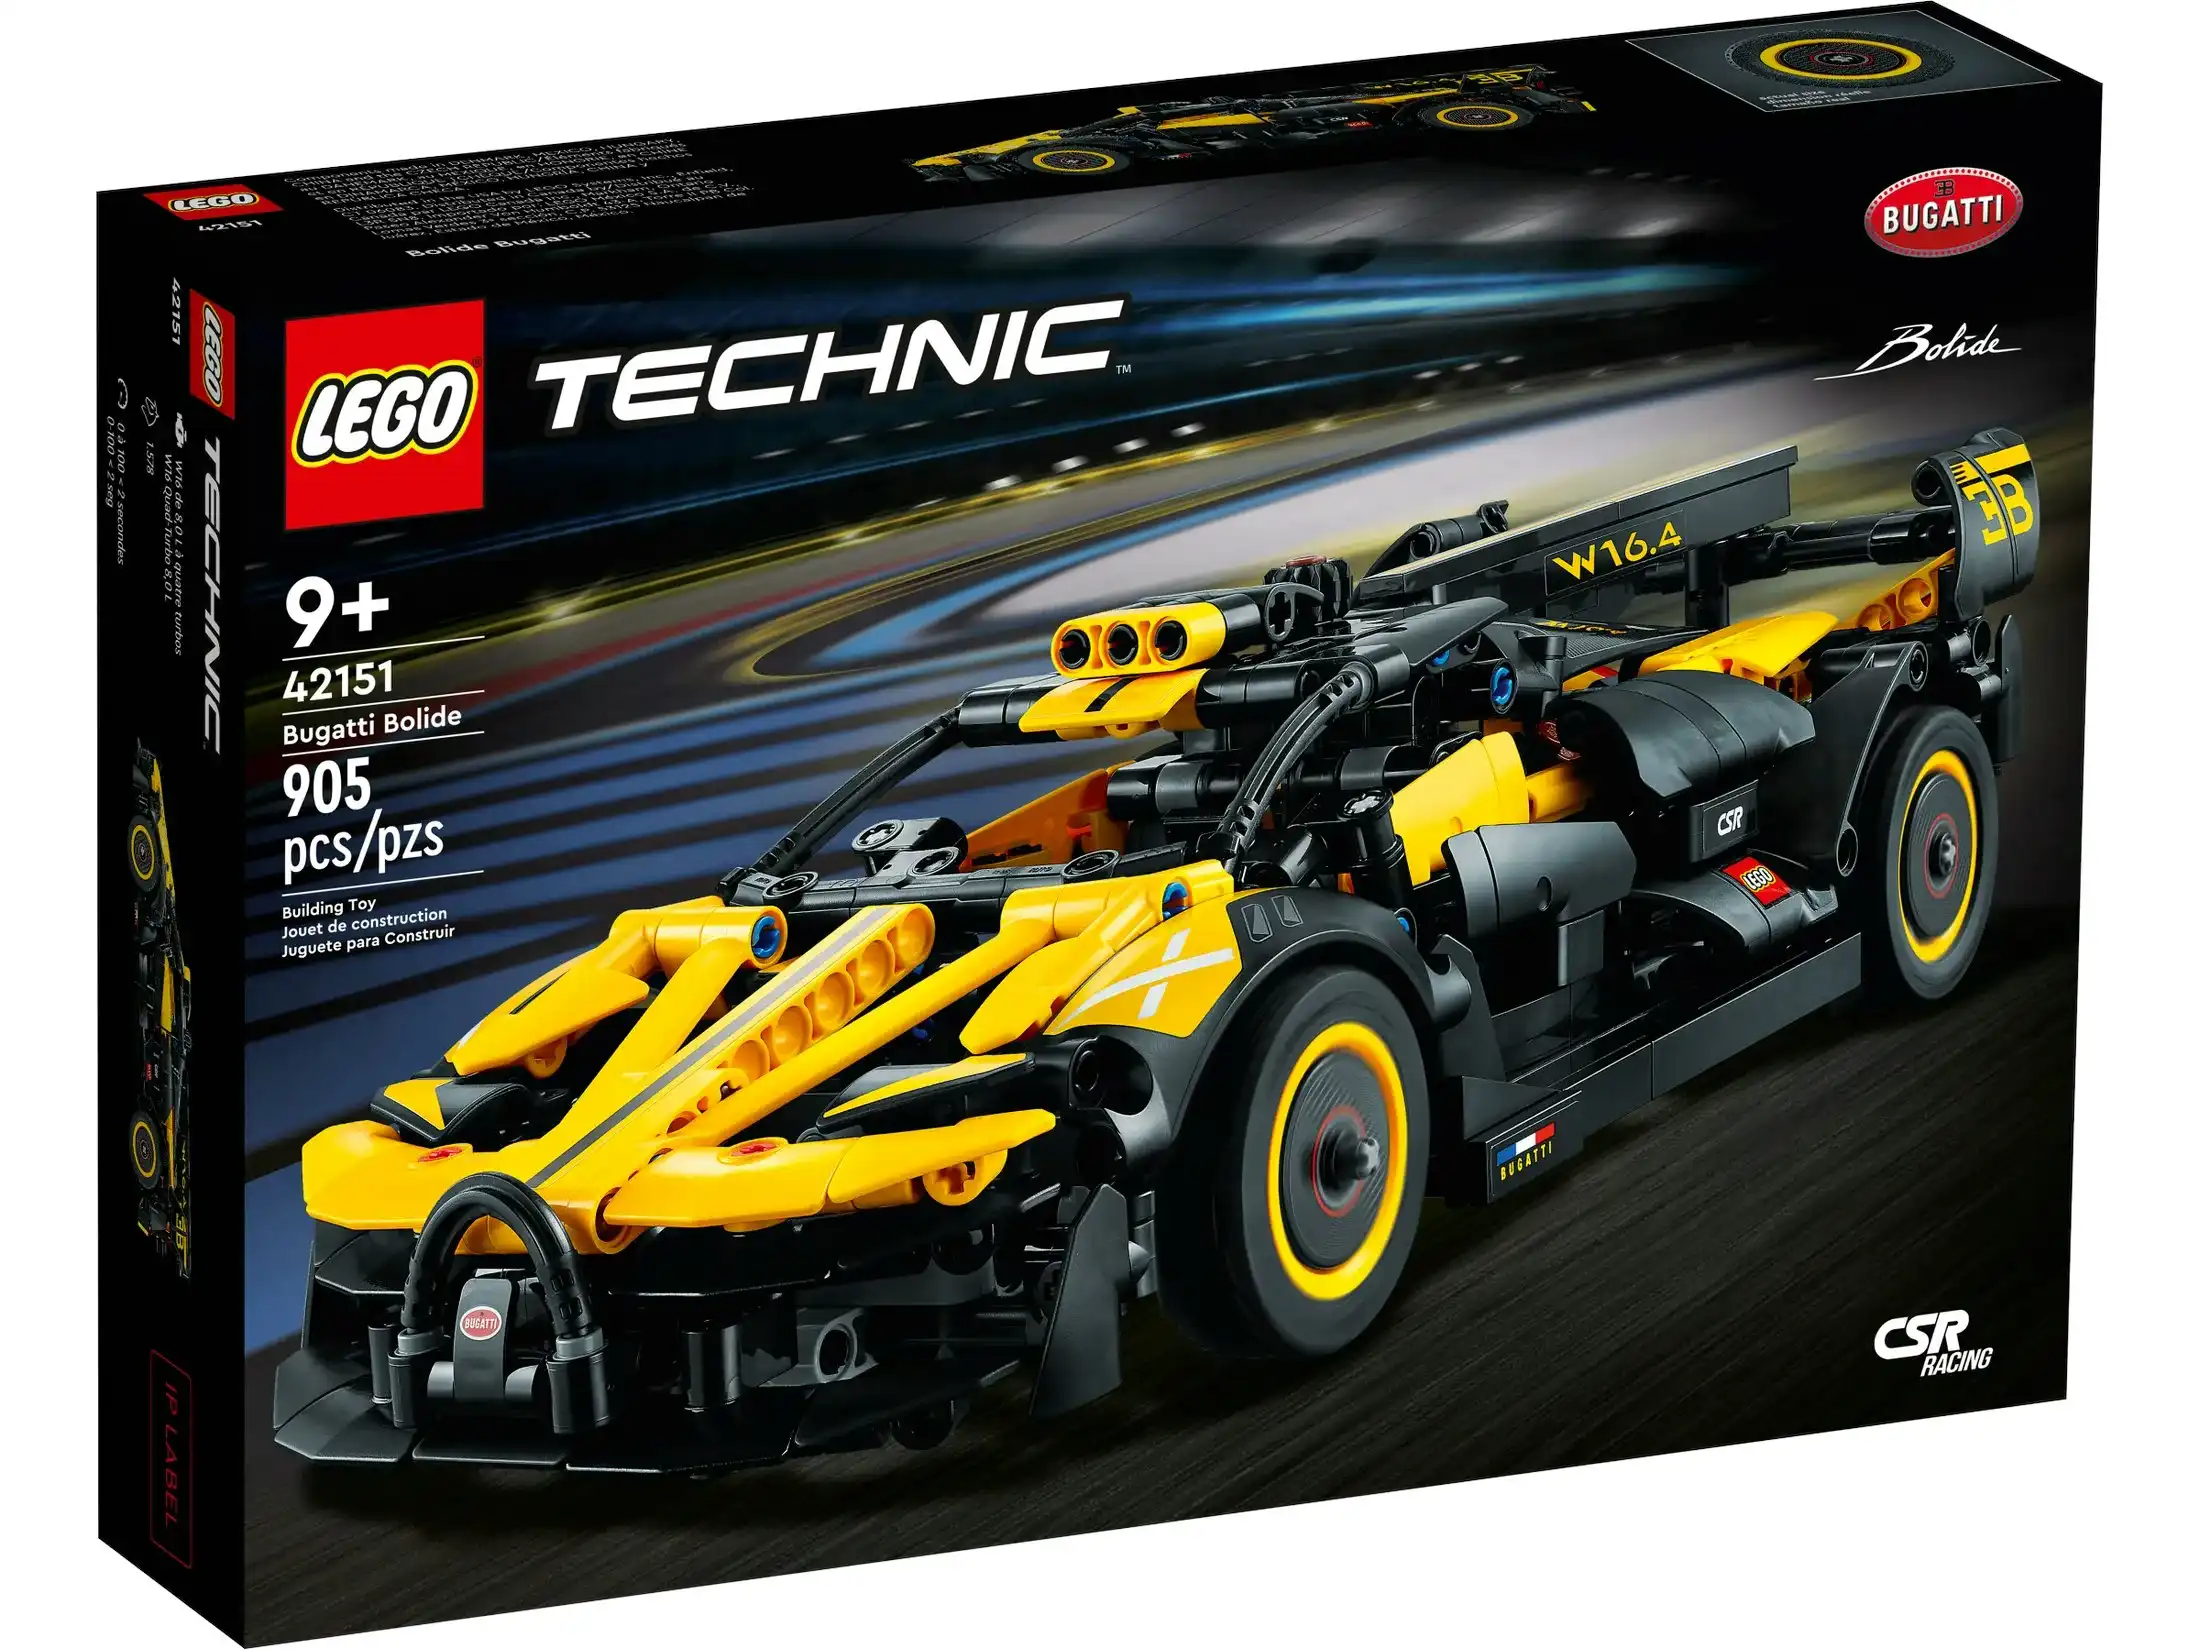 LEGO 42151 Bugatti Bolide - Technic